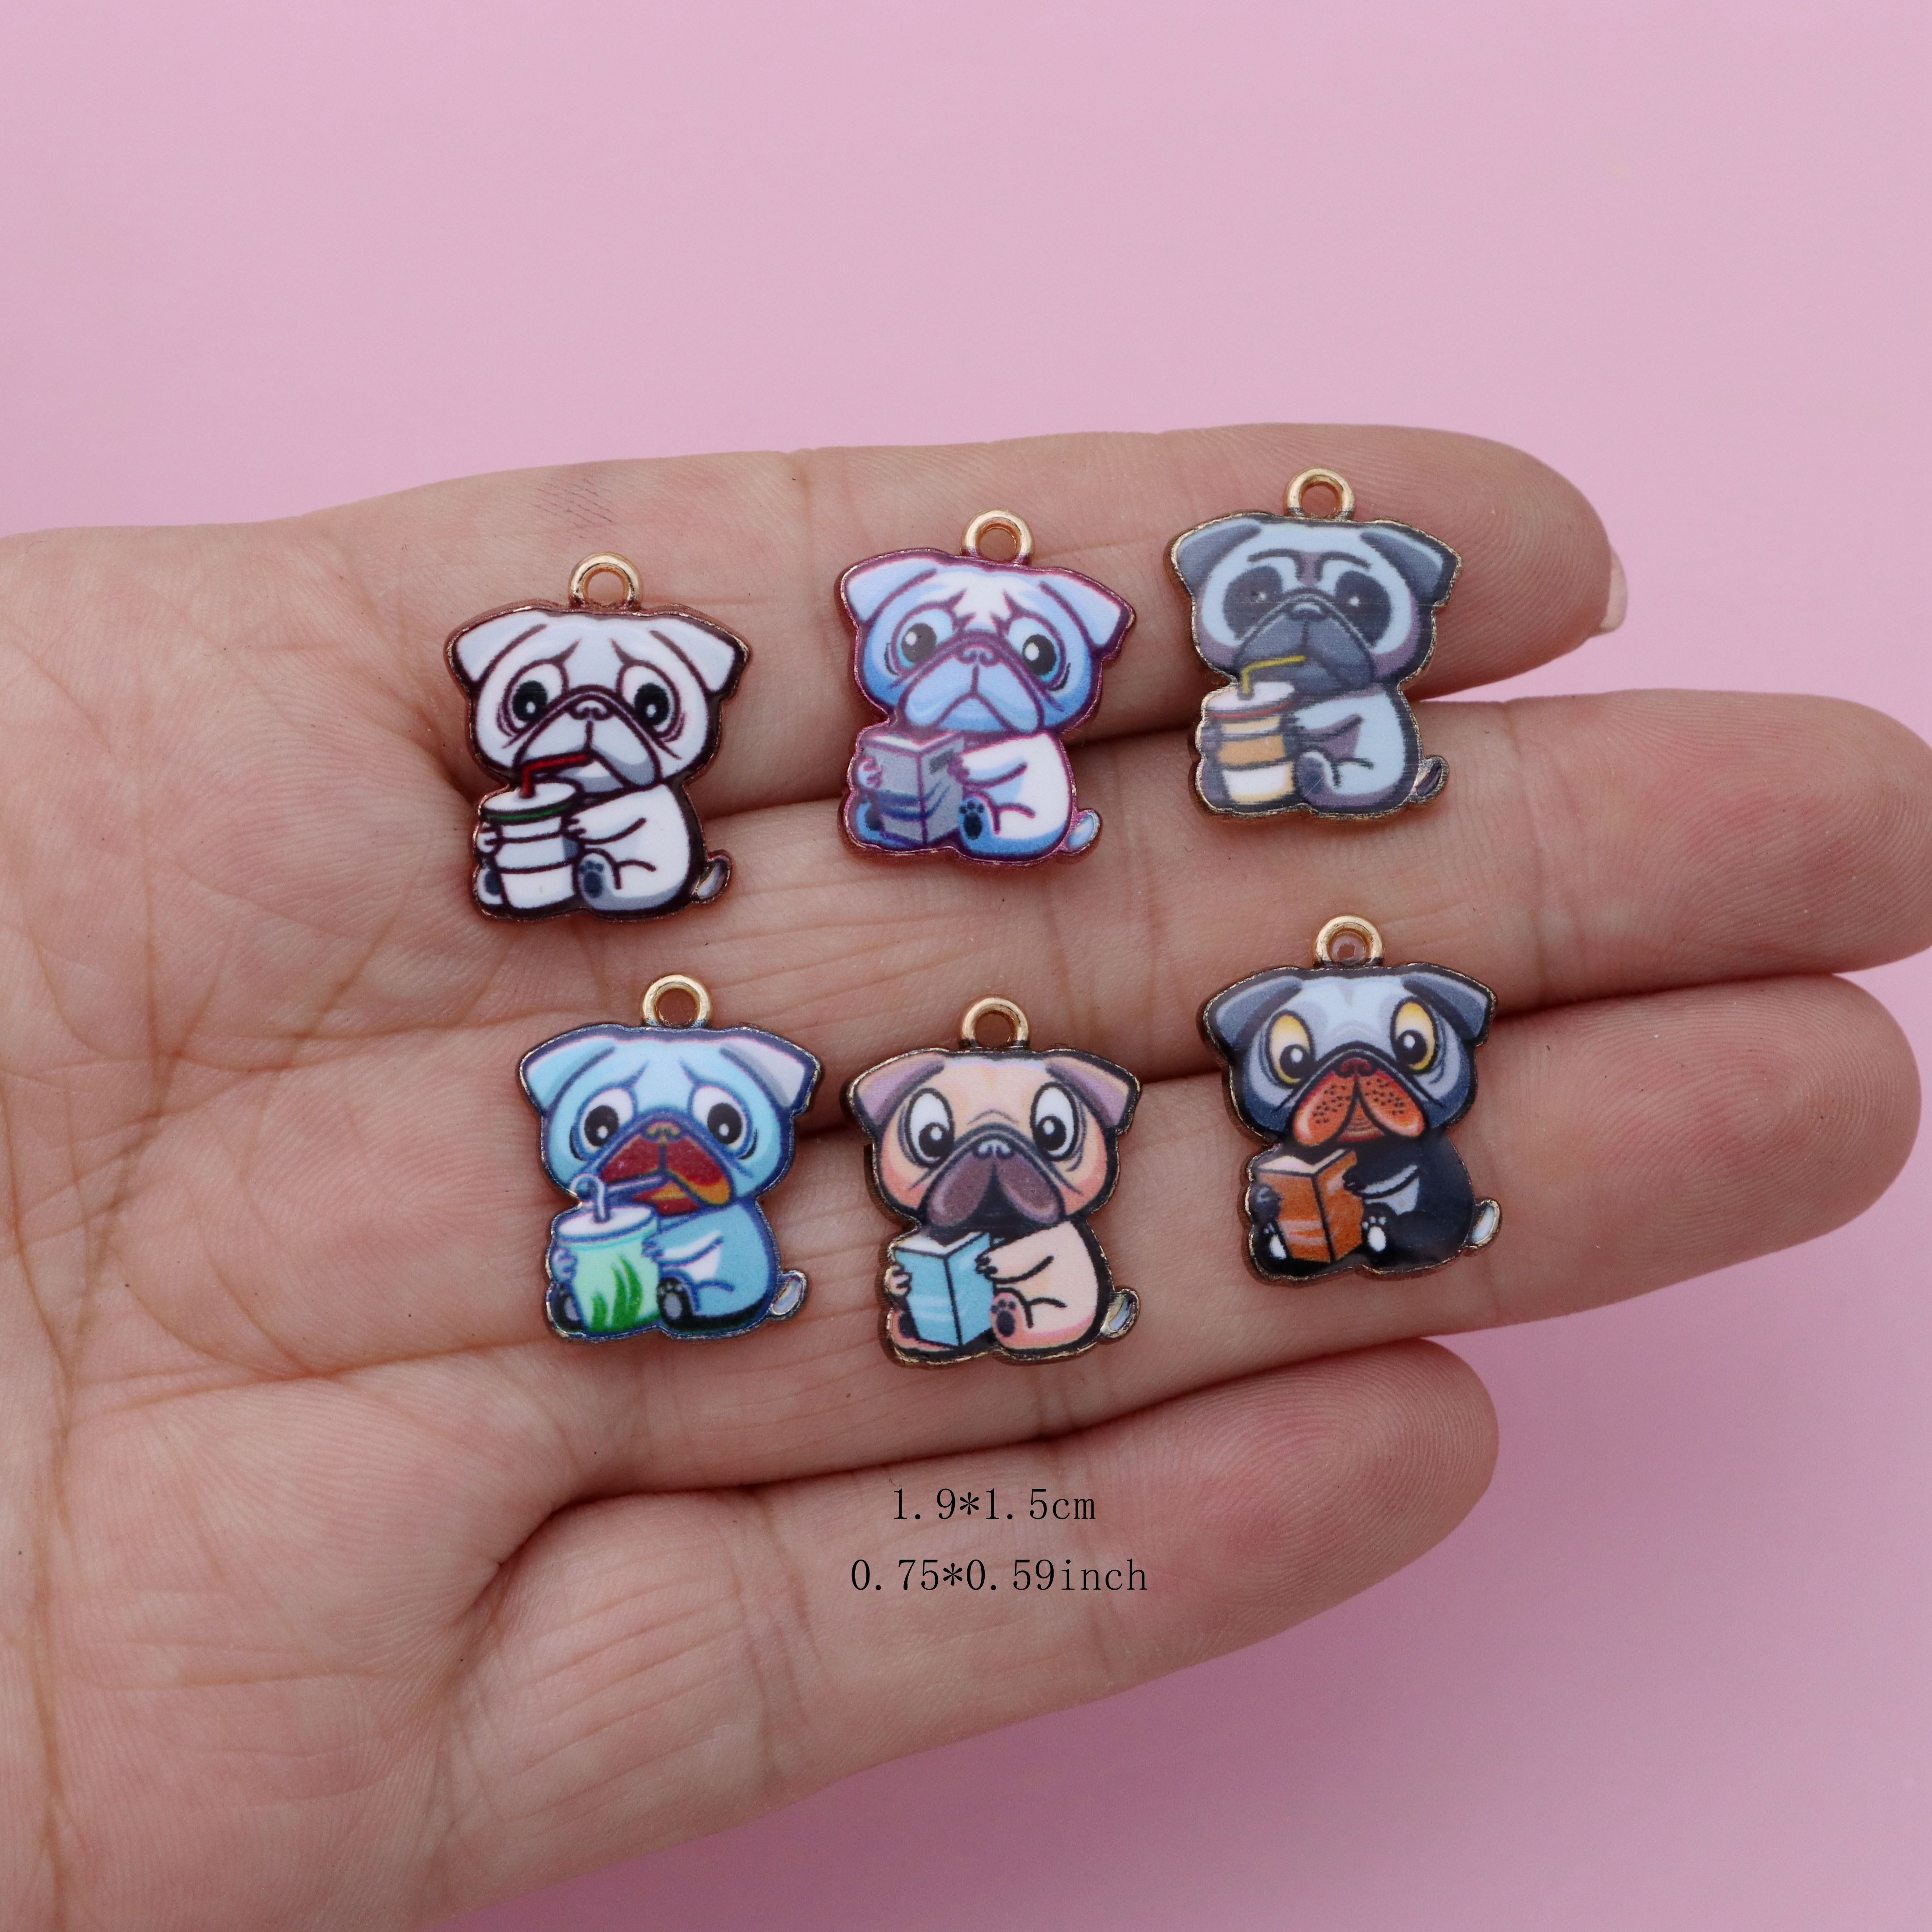 Puppy Poodle Enamel Charms - Dog Enamel Pendants Jewelry Making Supplies  4pcs Se